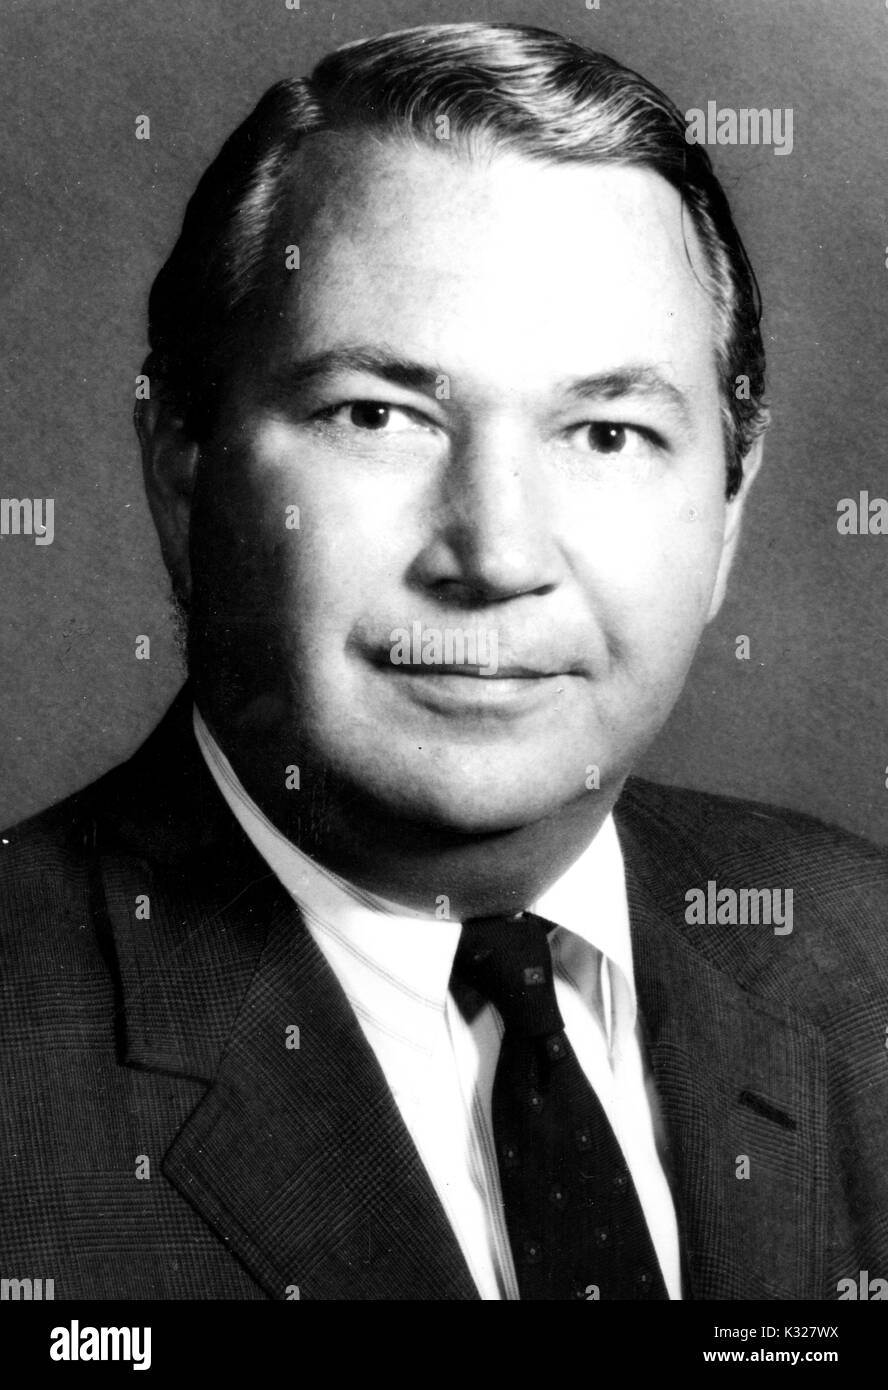 Portrait de la poitrine vers le haut de Winfield Scott Fossé III, Vice-président de la société de développement de l'entreprise, 1970. Rouse Banque D'Images